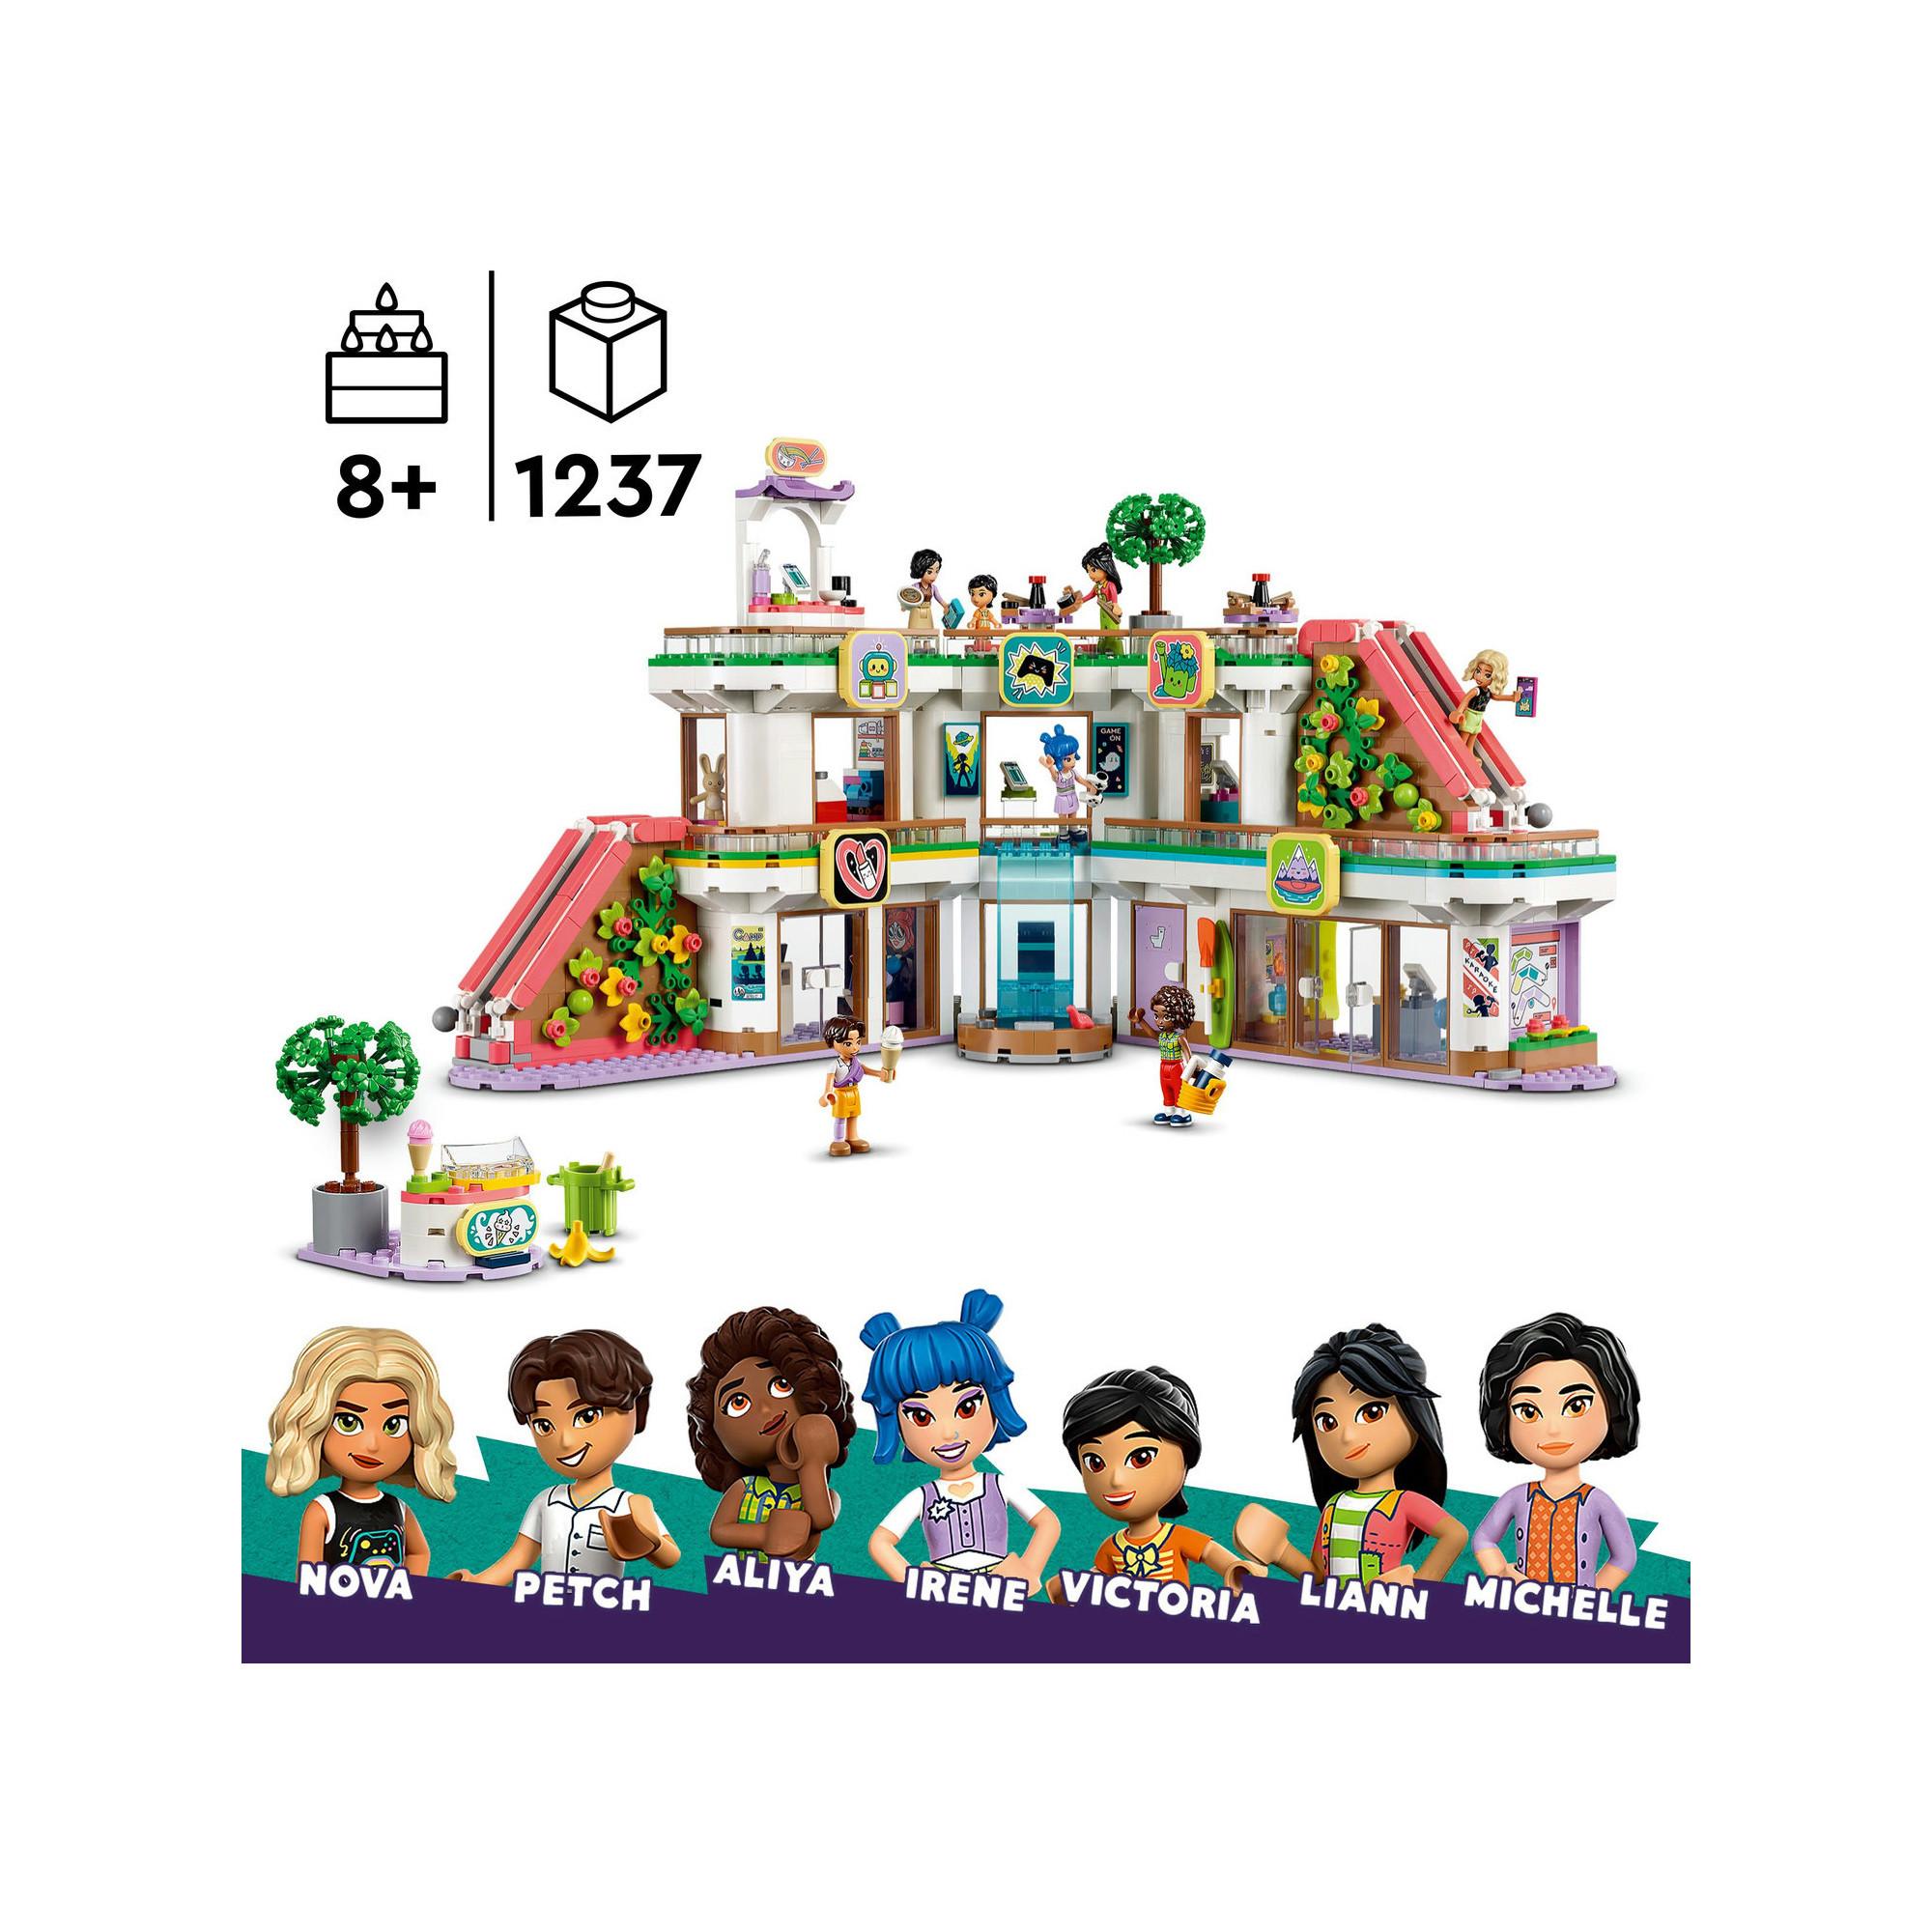 LEGO®  42604 Le centre commercial de Heartlake City 